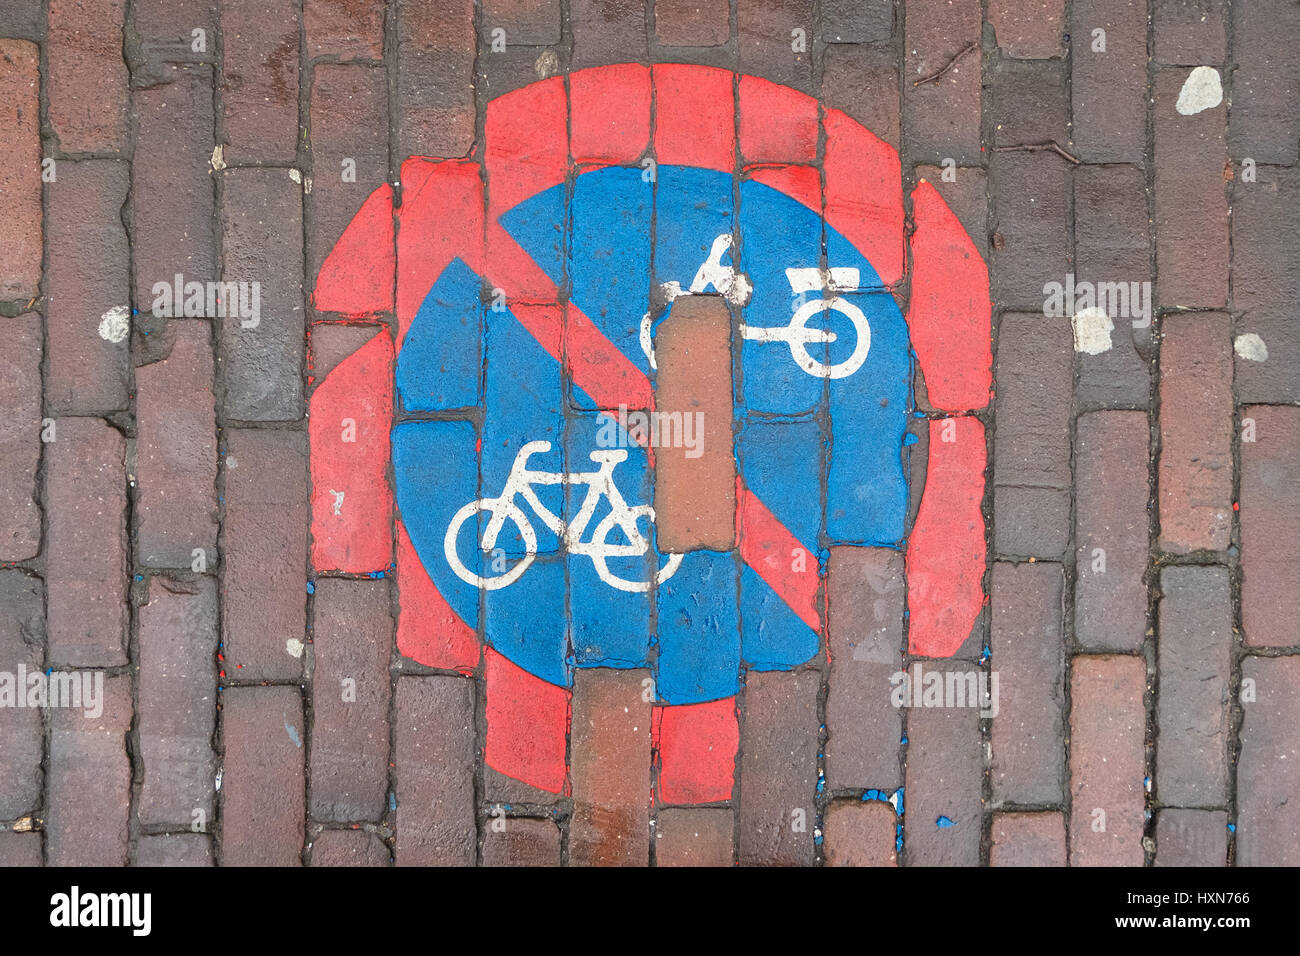 No hay signo de ciclismo pintado sobre la acera. Foto de stock